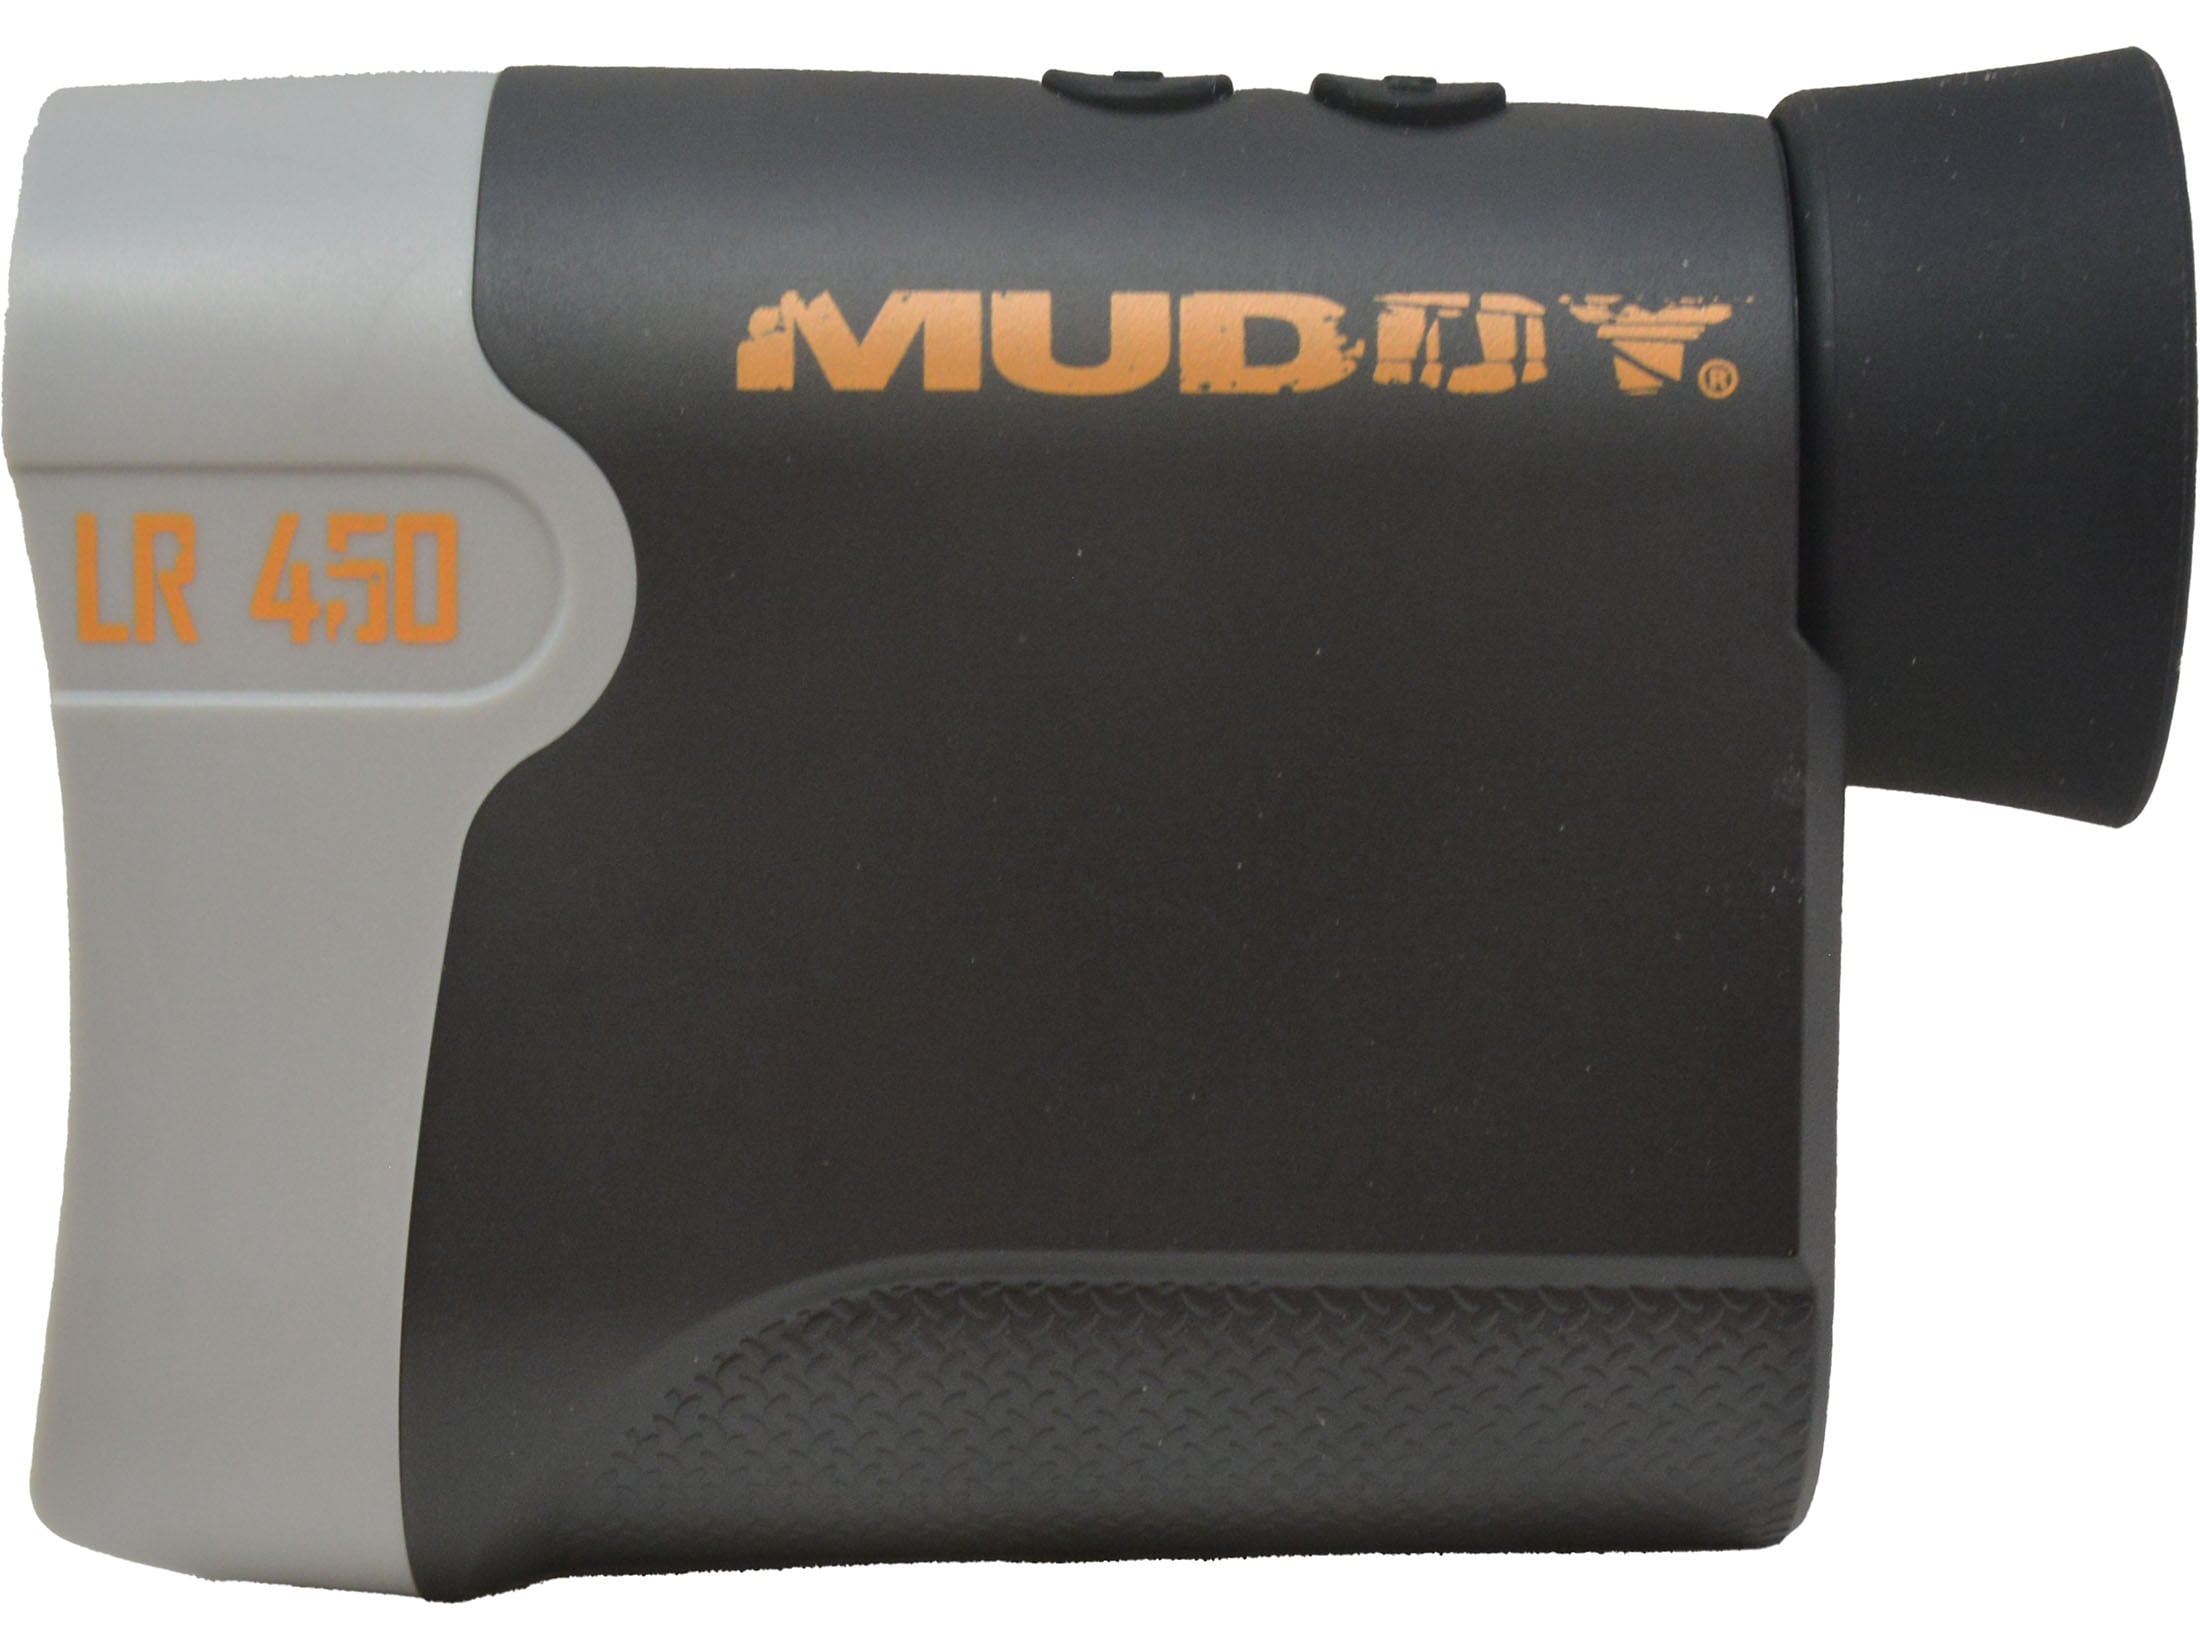 Muddy MUDLR450 Laser Range Finder for sale online 